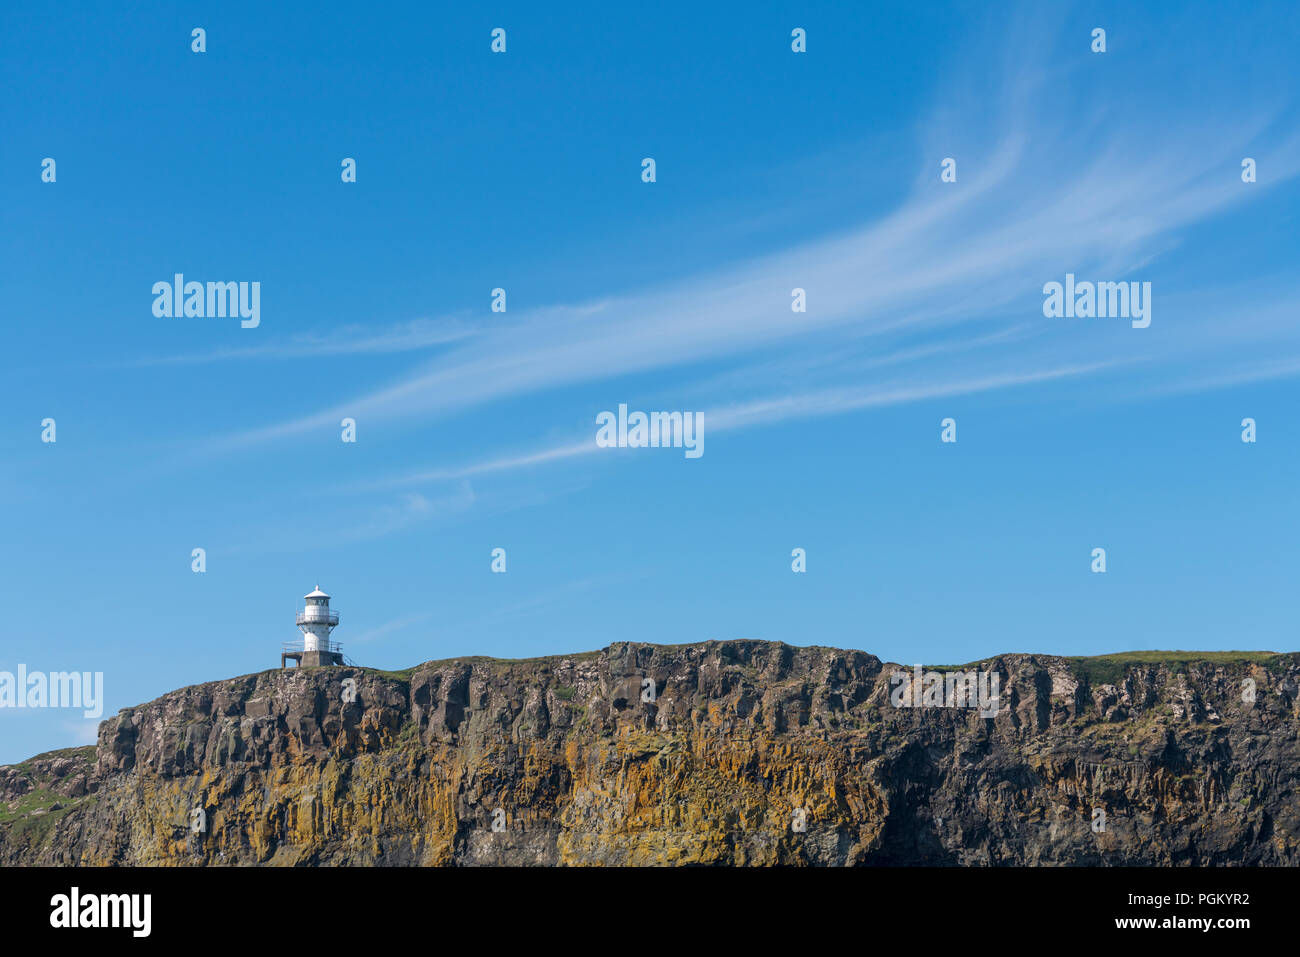 Einen kleinen Leuchtturm auf der Insel Canna. Canna ist die westlichste der kleinen Inseln, Schären, in der Schottischen Inneren Hebriden. Stockfoto